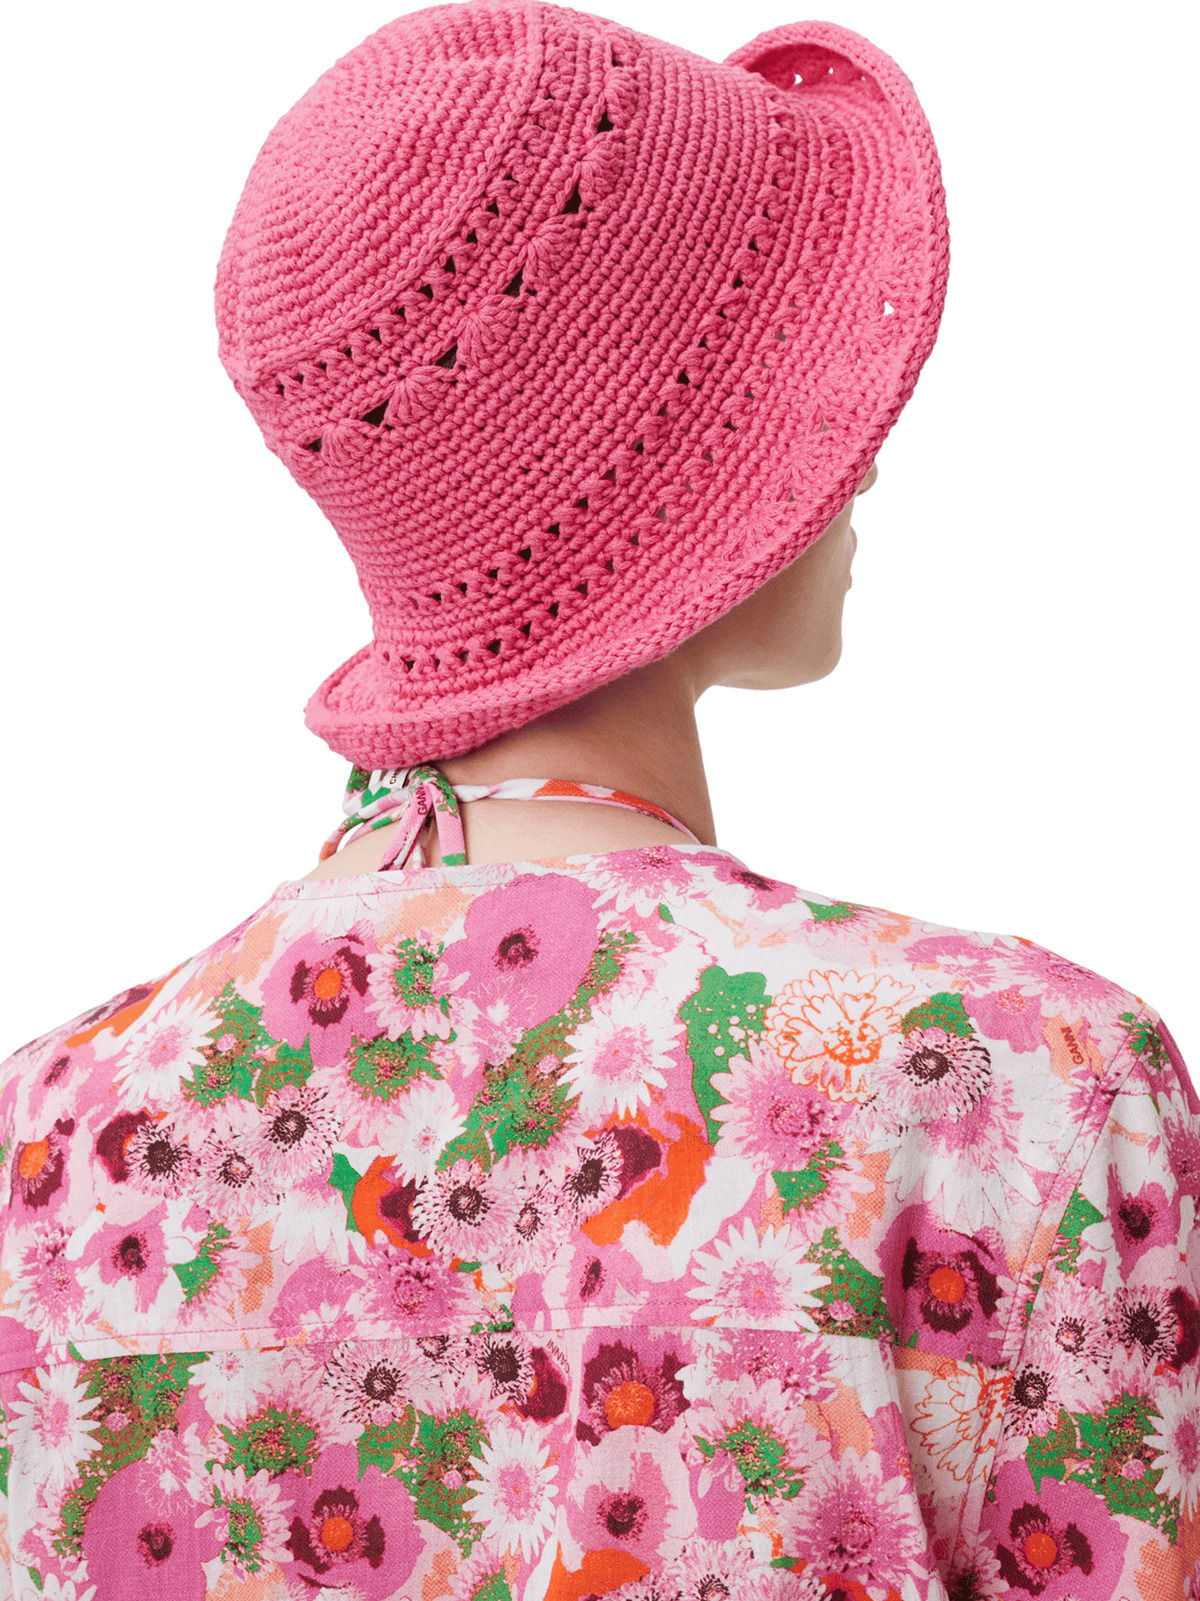 Cotton Crochet Bucket Hat / Shocking Pink Womens GANNI 